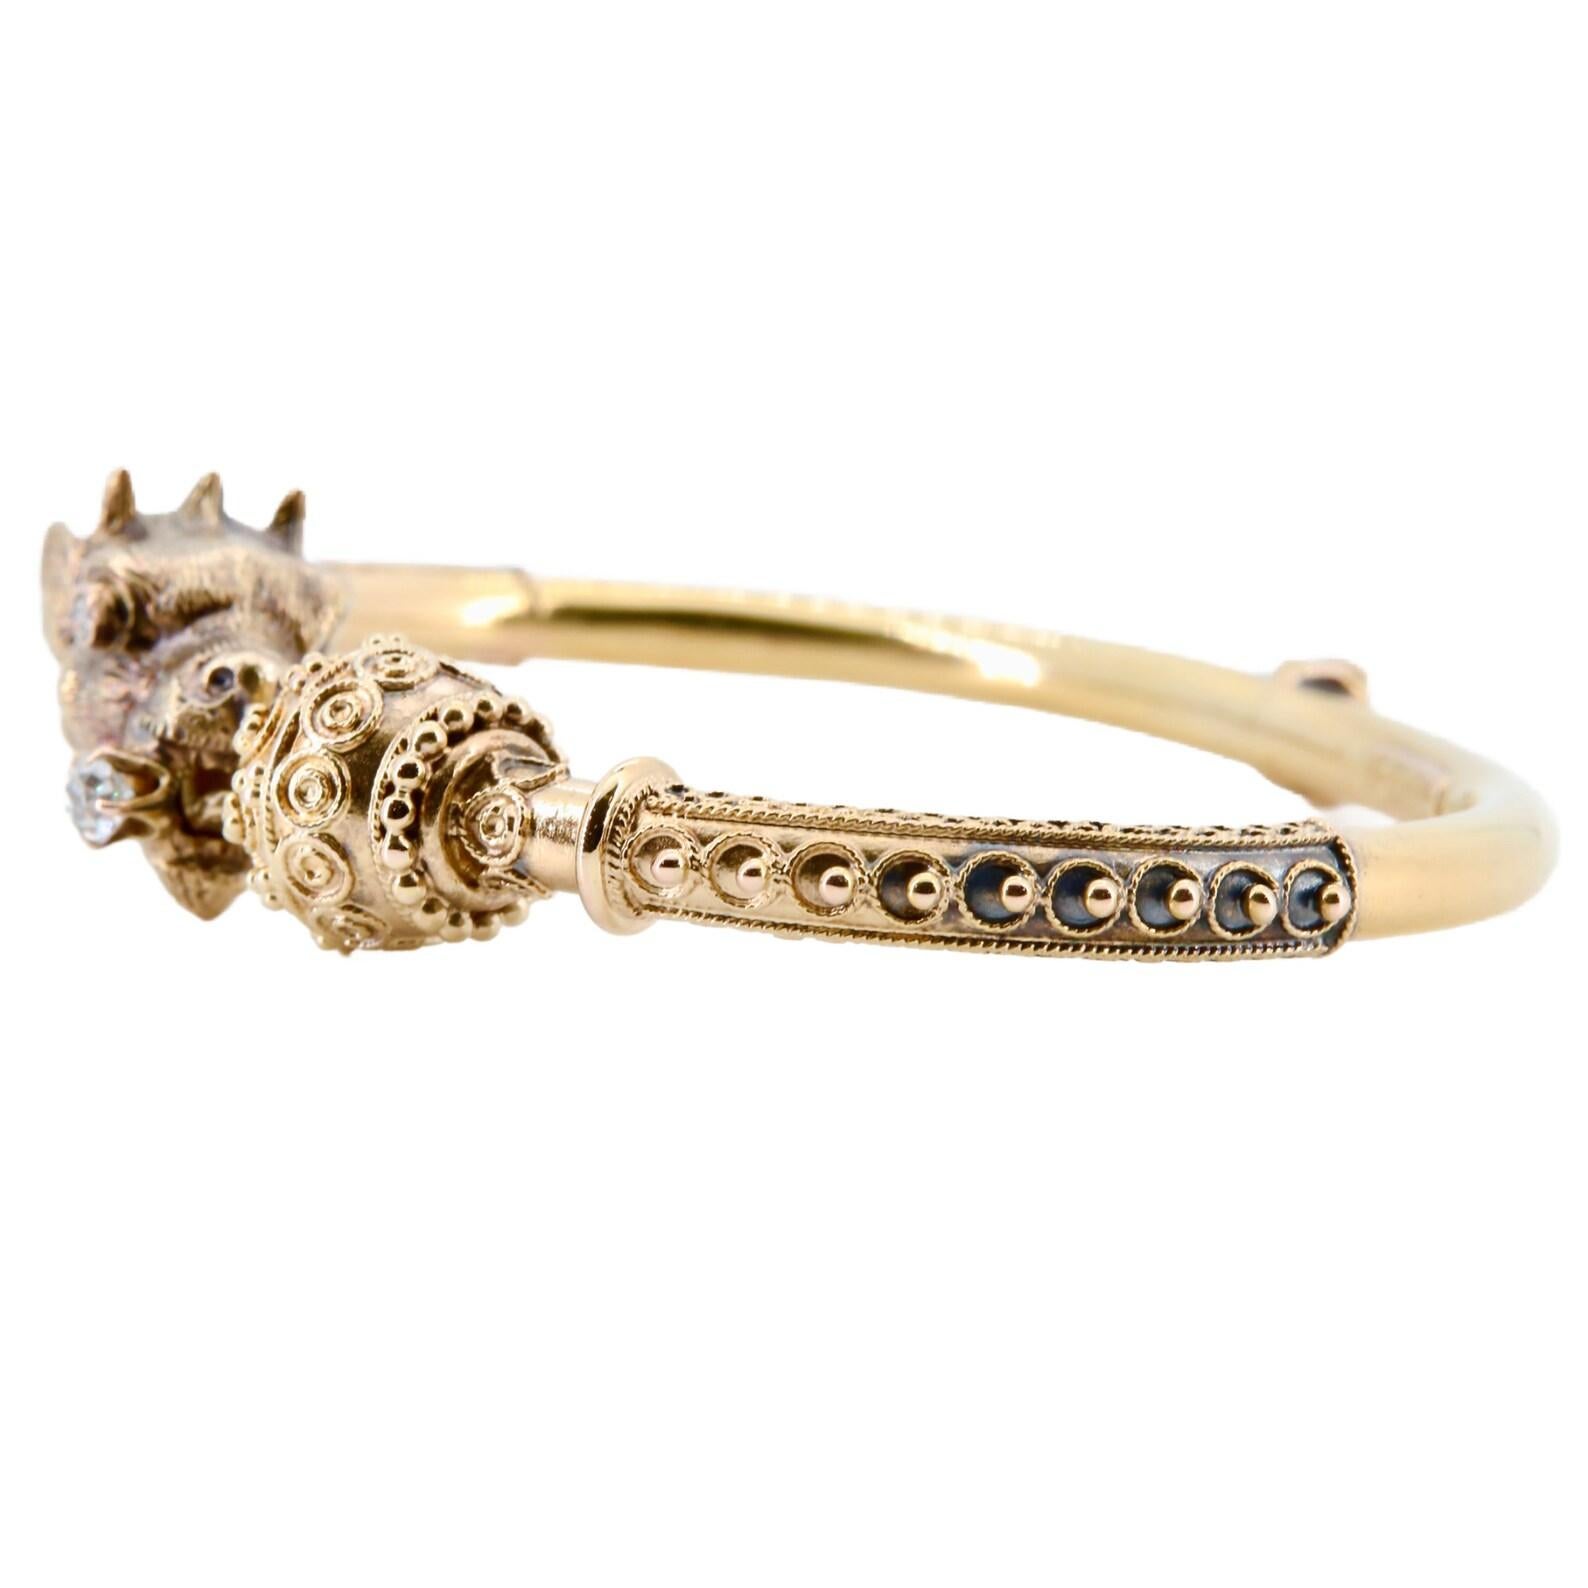 Bracelet d'époque victorienne en forme de griffon de style étrusque en or jaune 14 carats. Ce griffon magnifiquement sculpté porte dans sa bouche un diamant taillé dans une ancienne mine et un œil en diamant. Le bracelet est rehaussé d'un fin